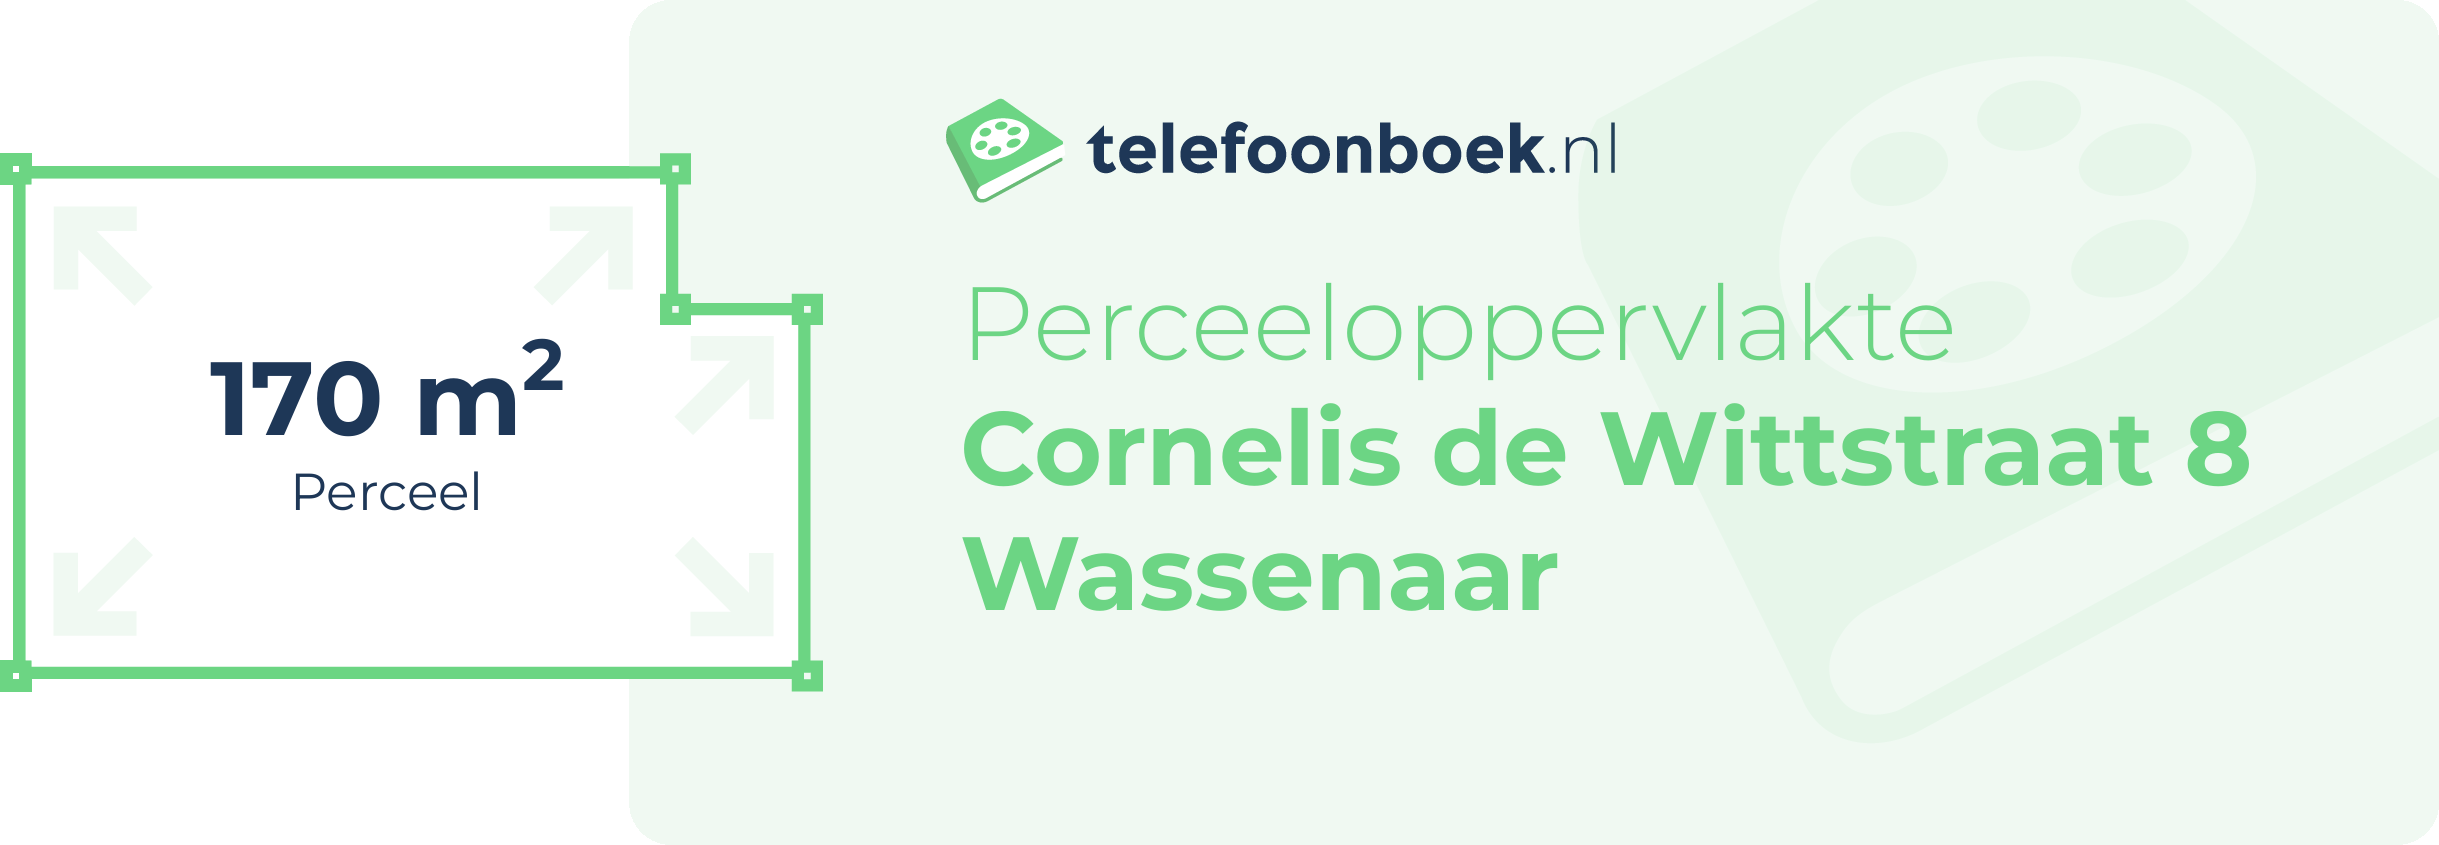 Perceeloppervlakte Cornelis De Wittstraat 8 Wassenaar